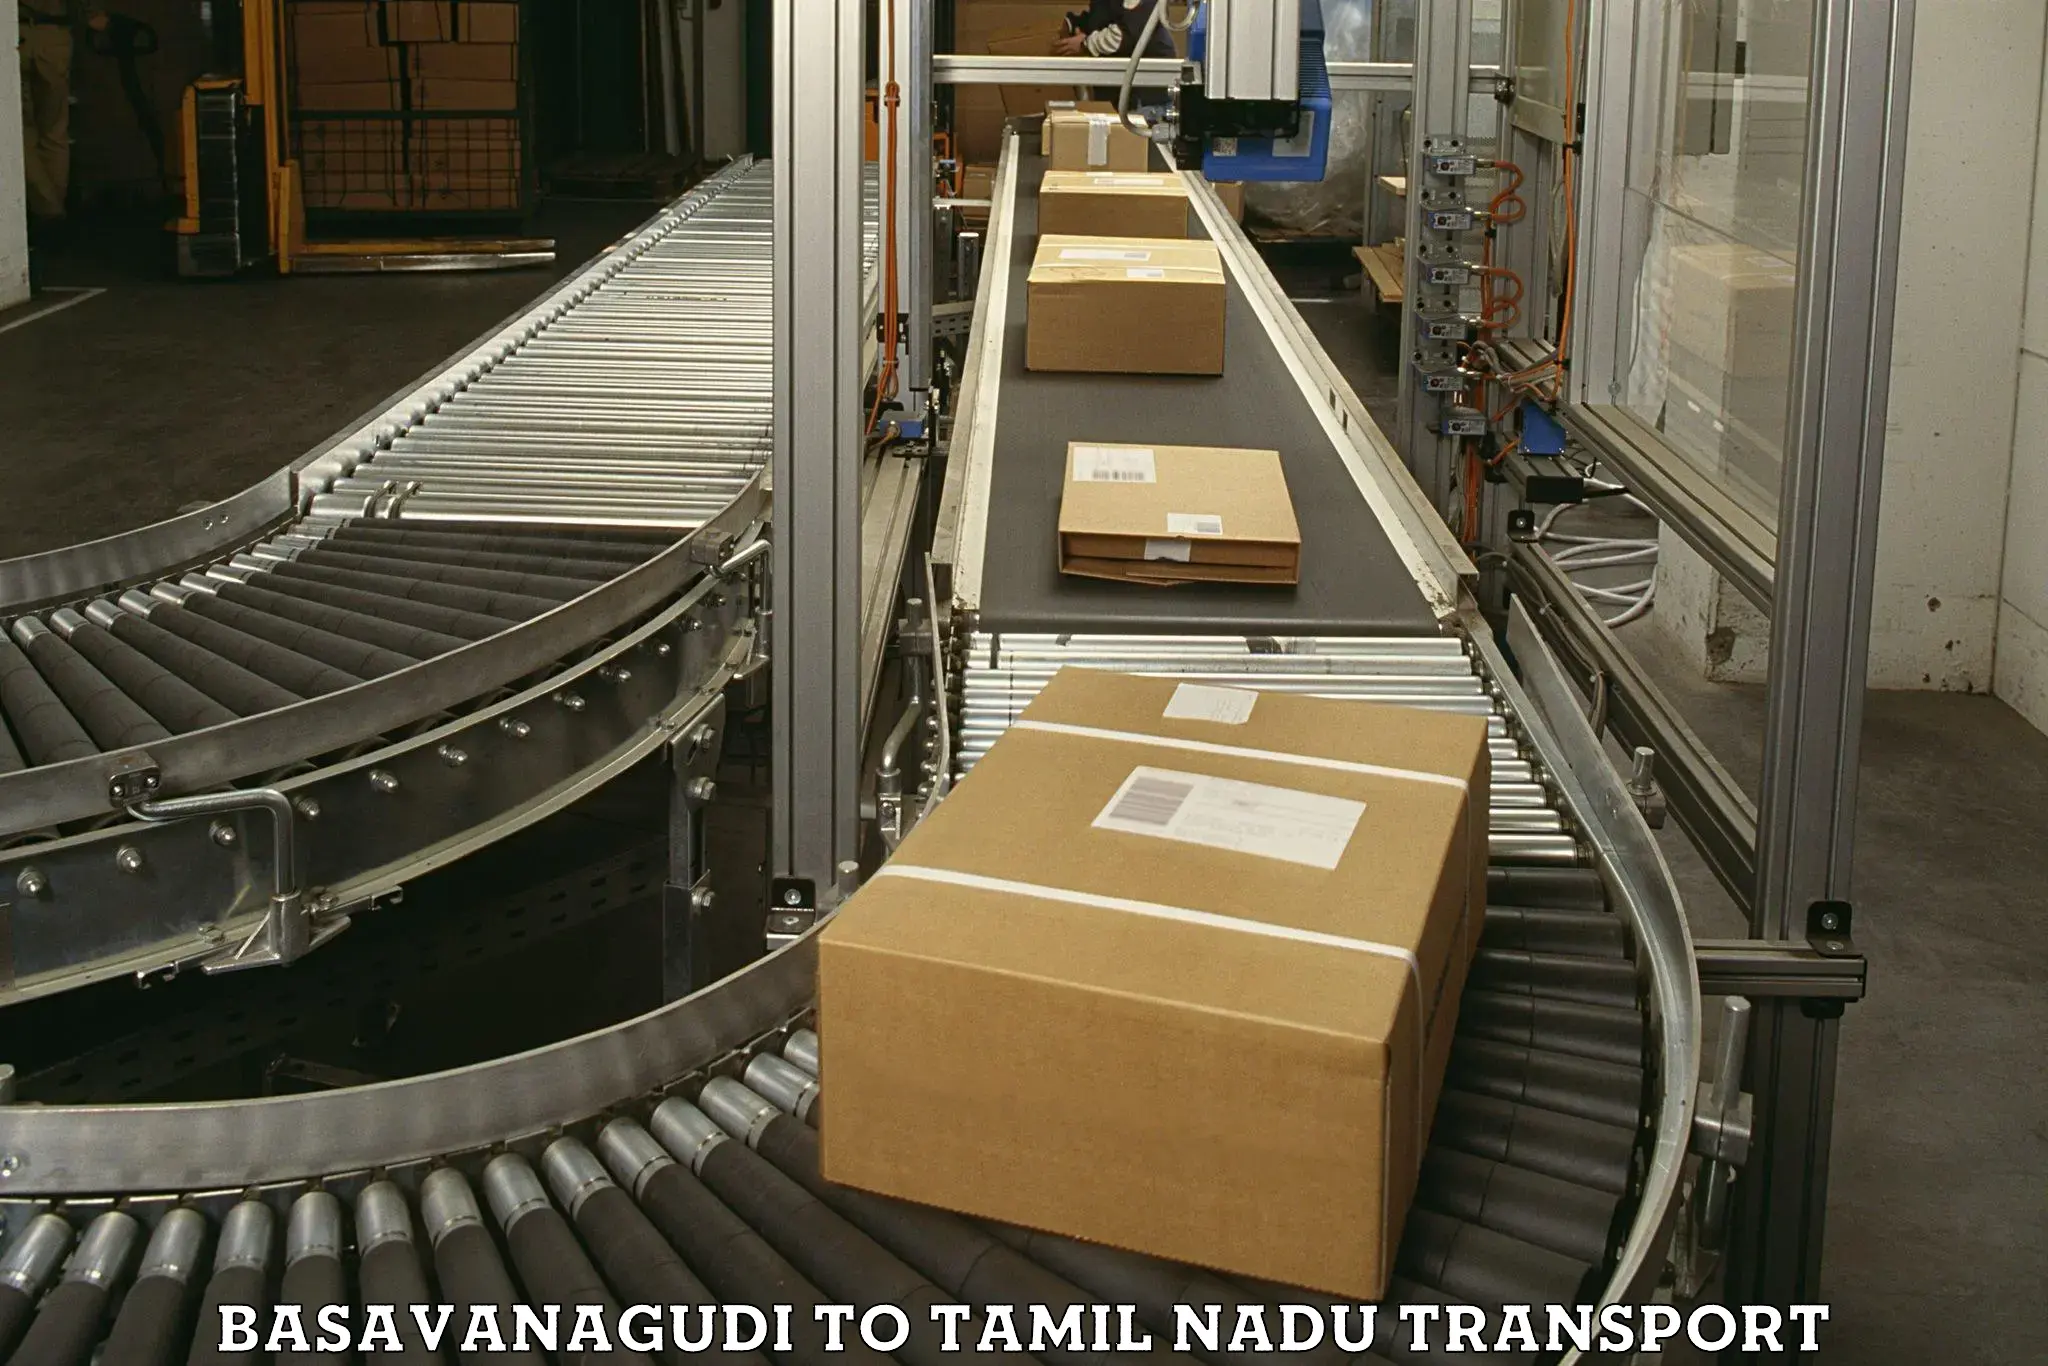 Daily transport service Basavanagudi to Periyakulam